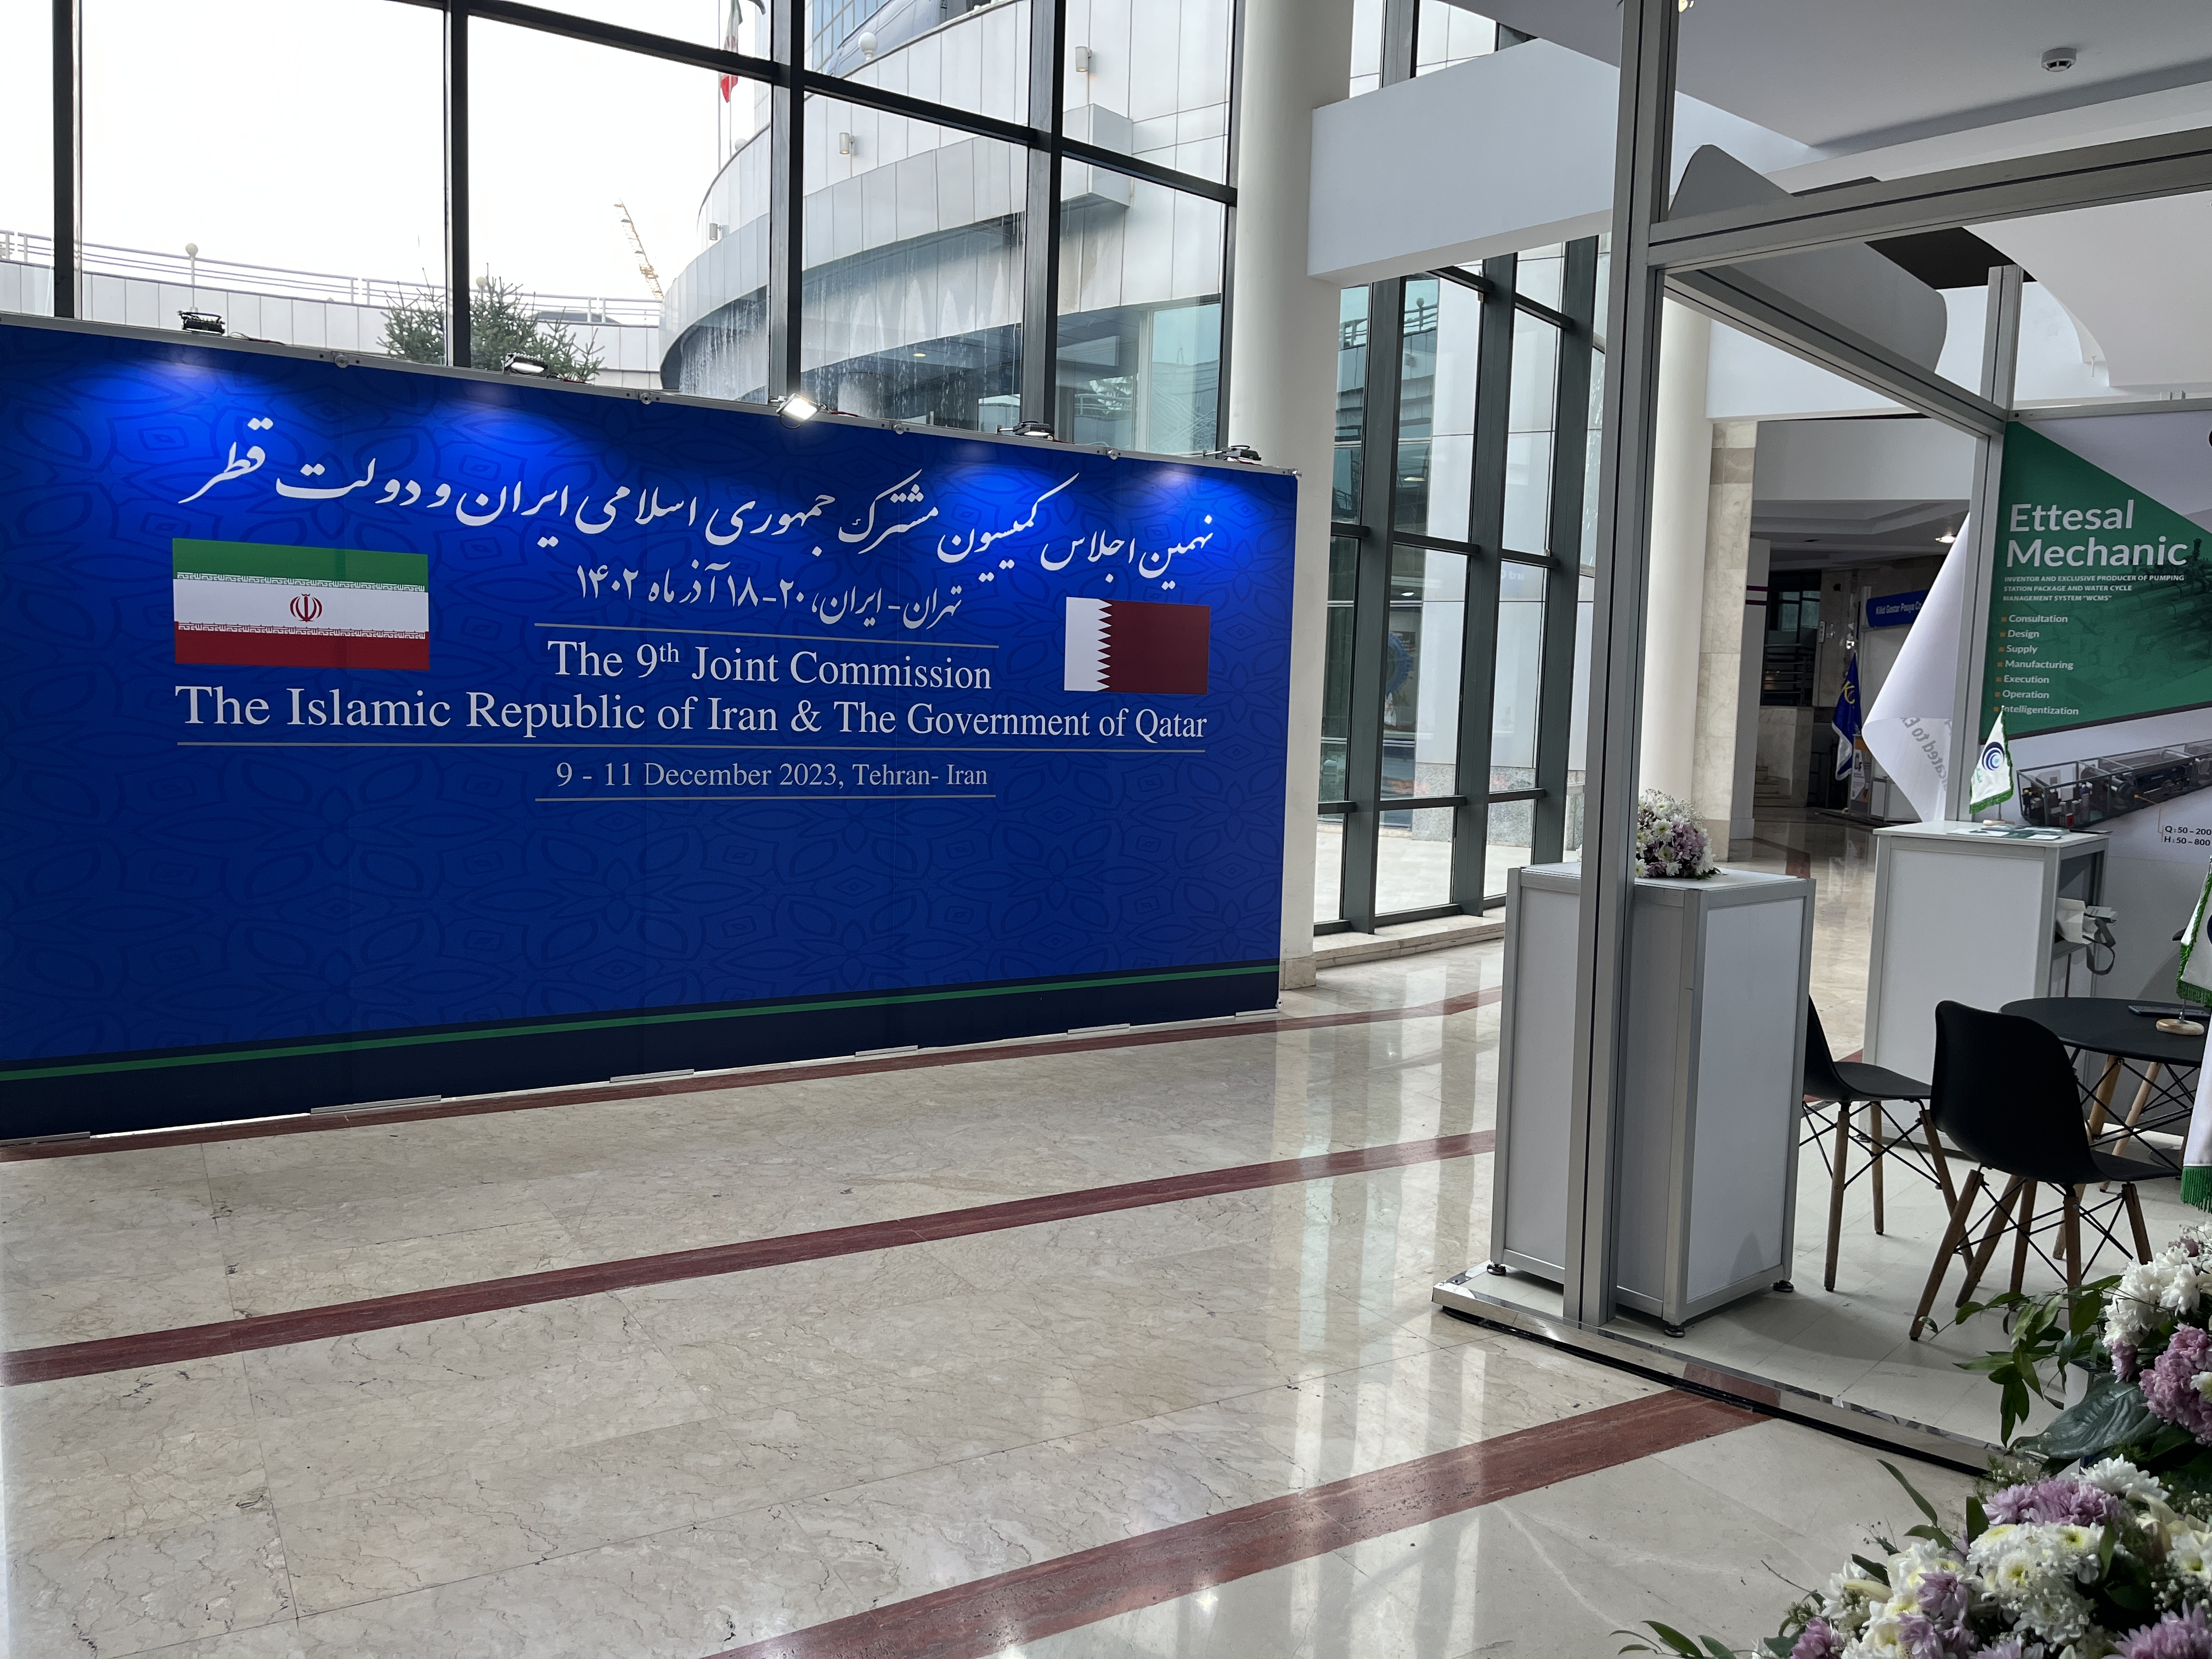 شرکت در نمایشگاه نهمین اجلاس کمیسیون مشترک جمهوری اسلامی ایران و دولت قطر 20-18 آذرماه 1402